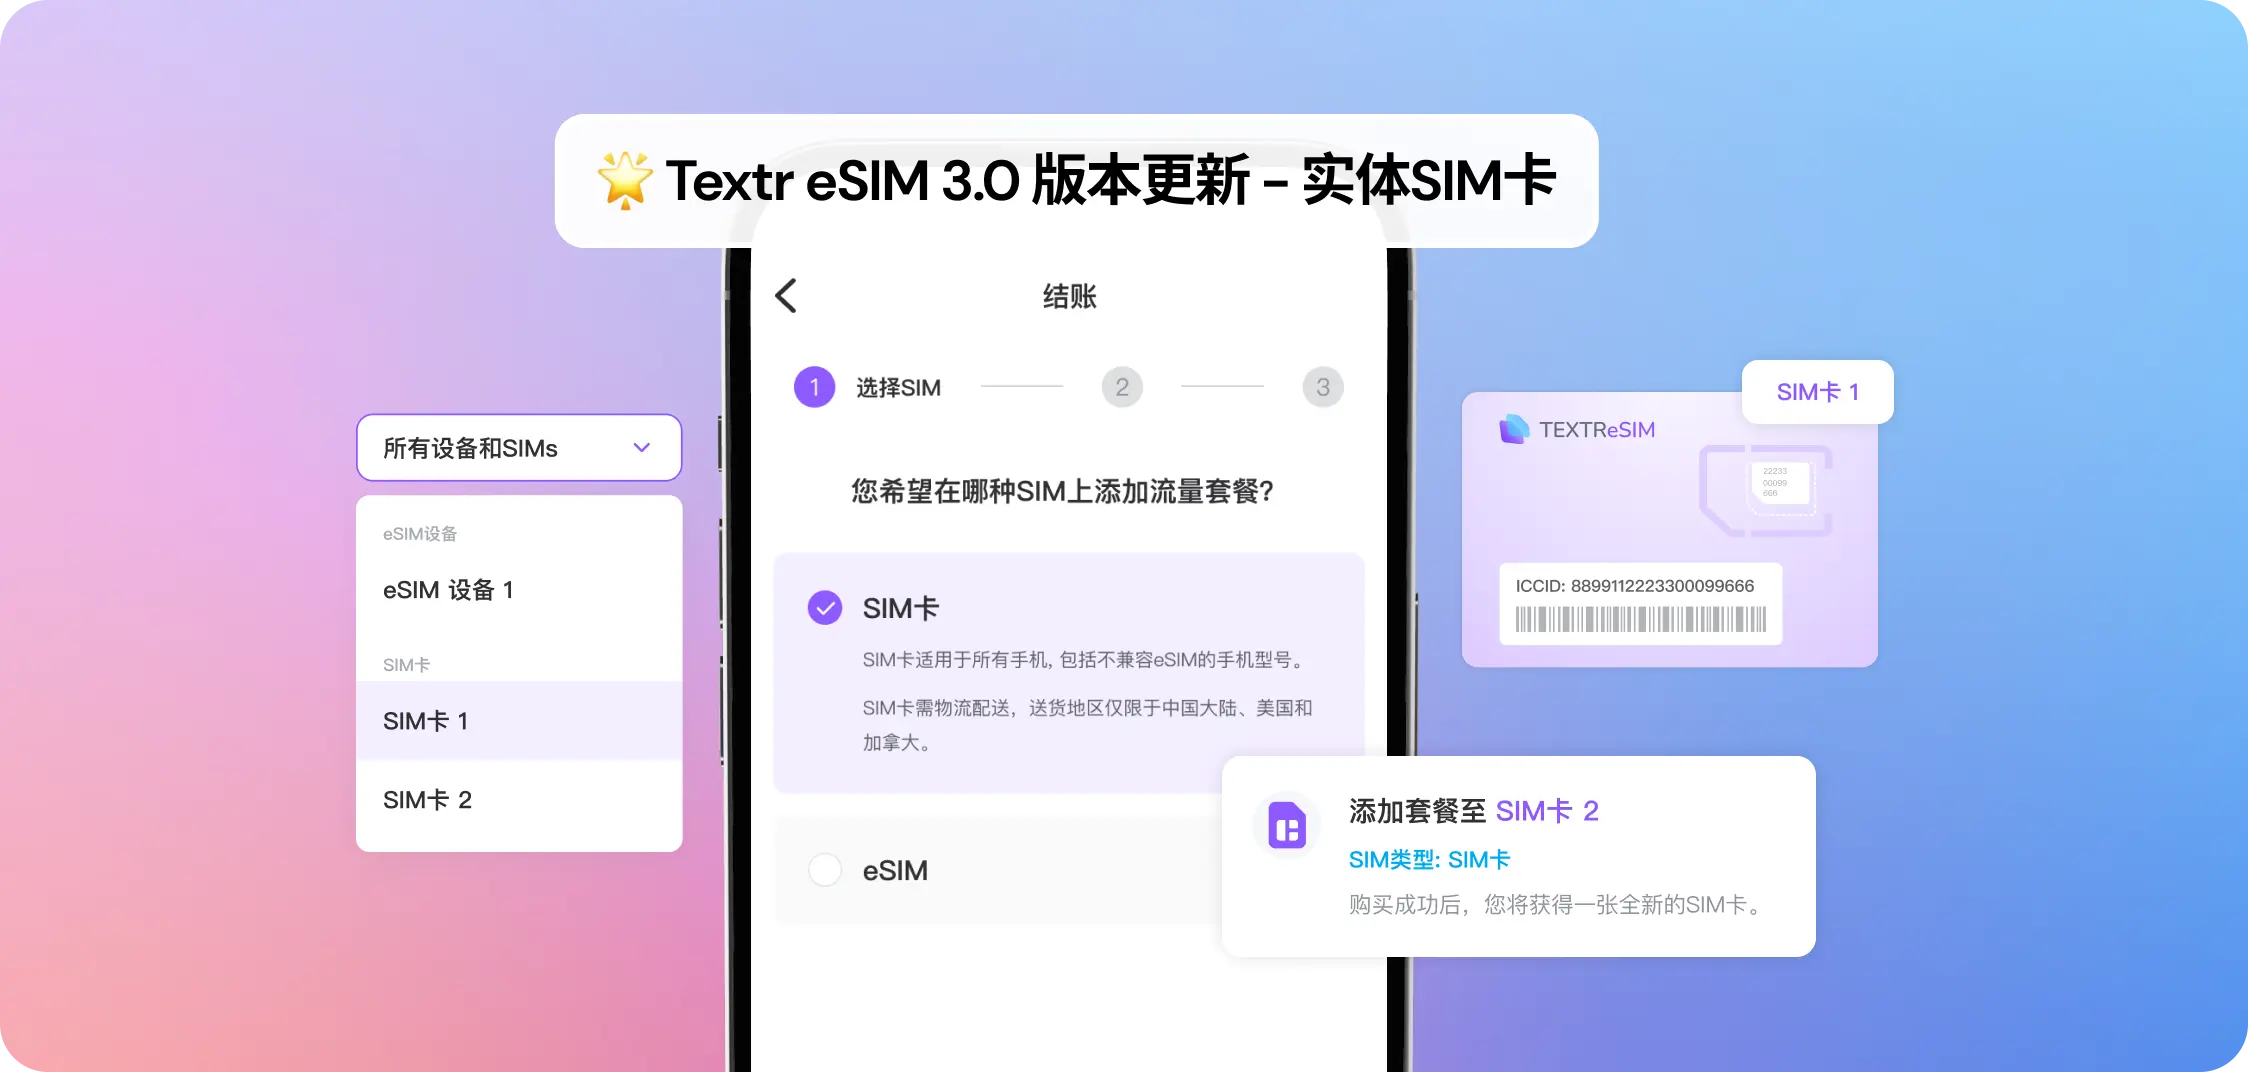 Textr eSIM 2.0 Update